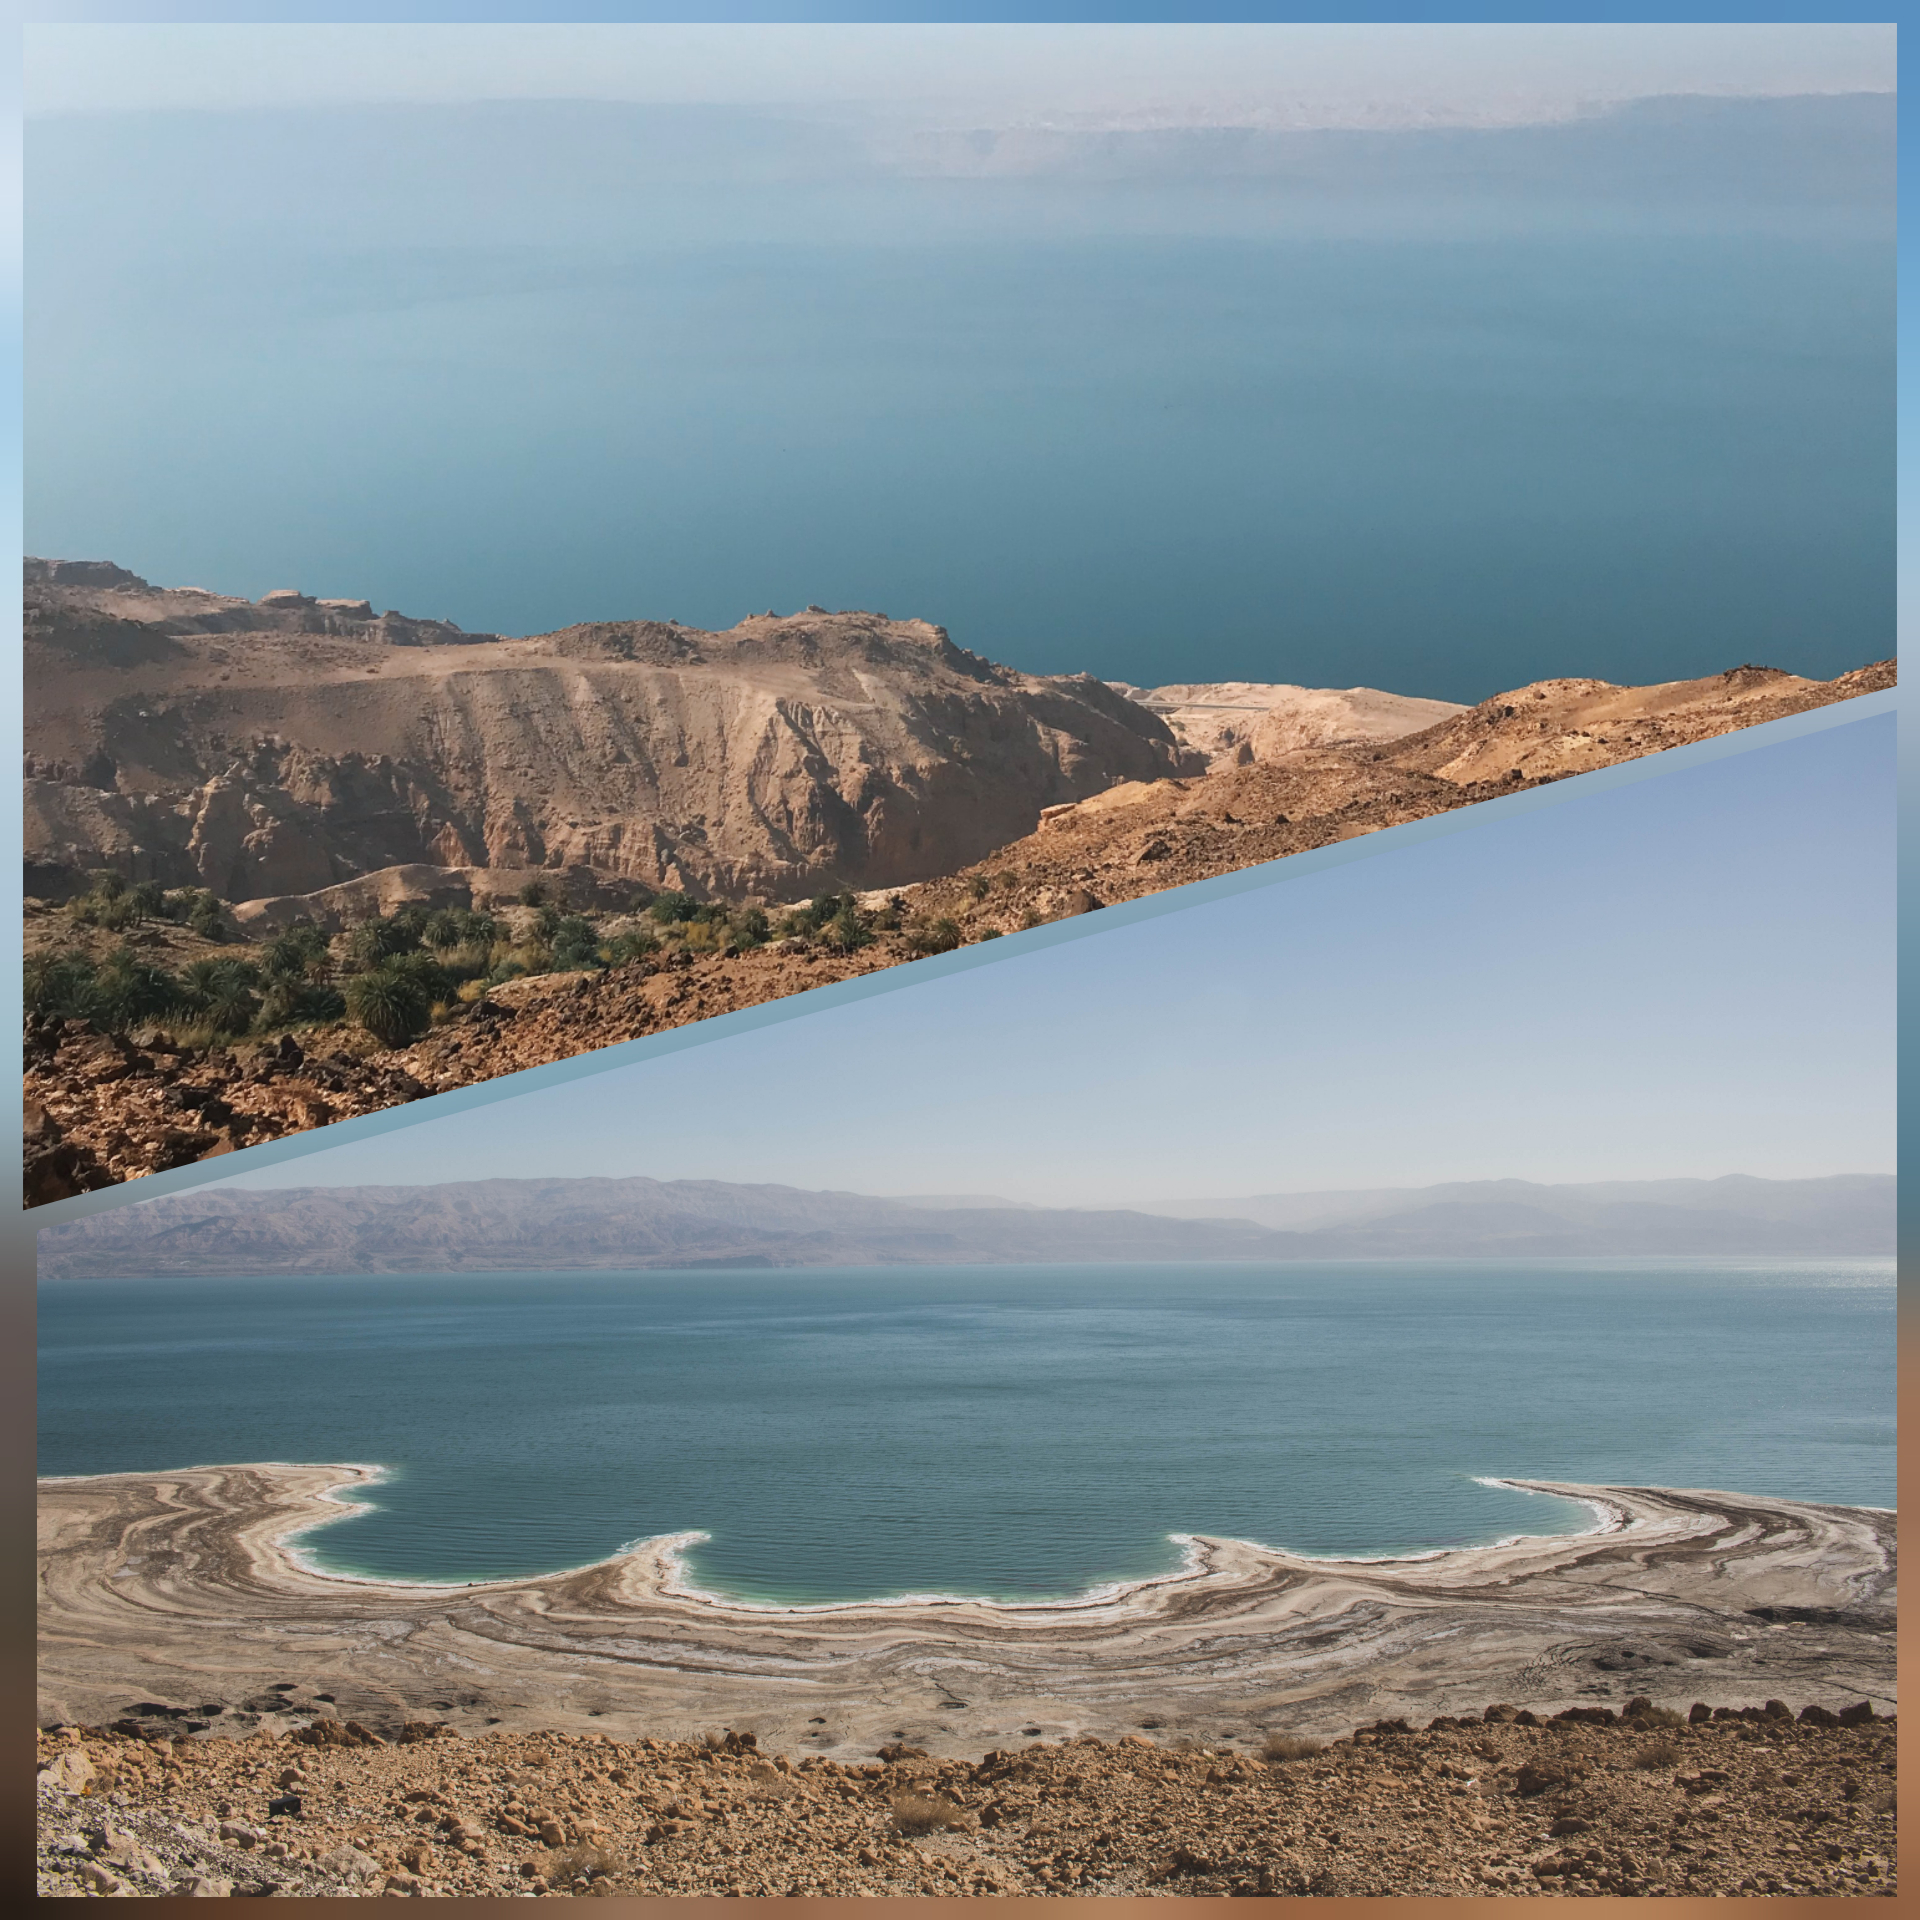 Dead Sea Facts